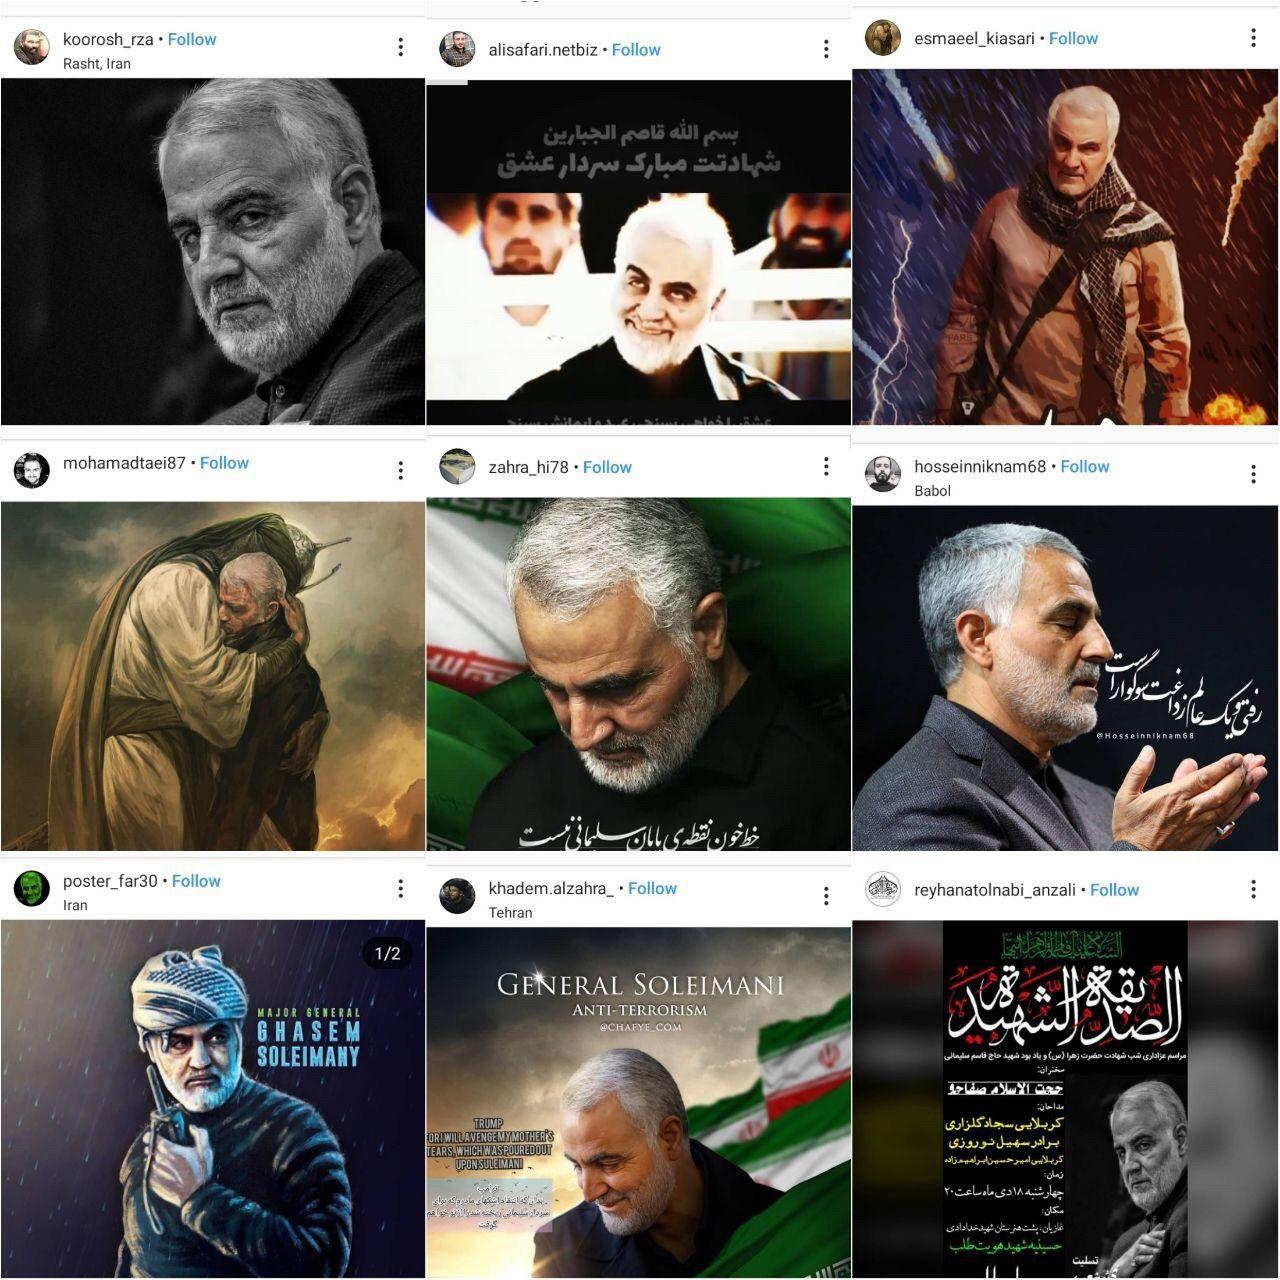 اینستاگرام در قرق کاربران ایرانی